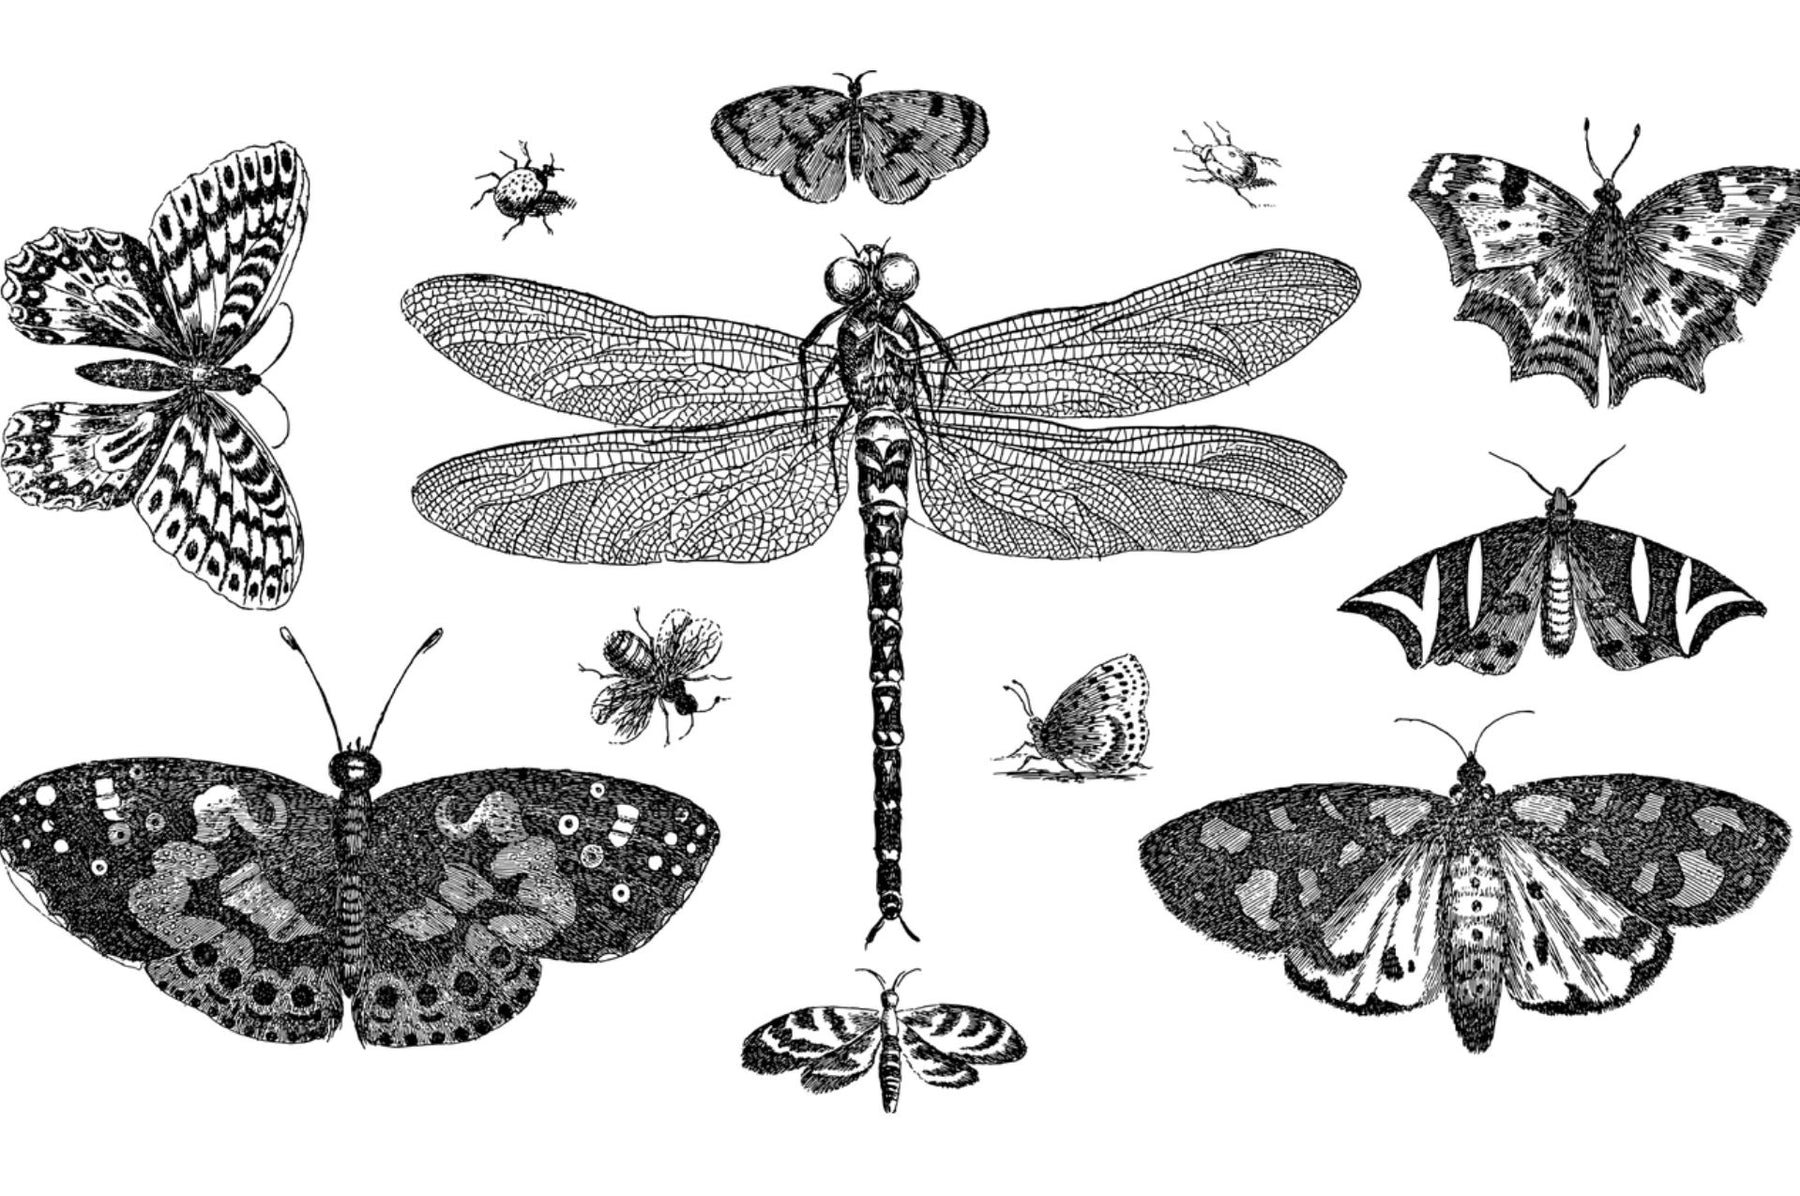 Zeichnungen von verschiedenen Insekten